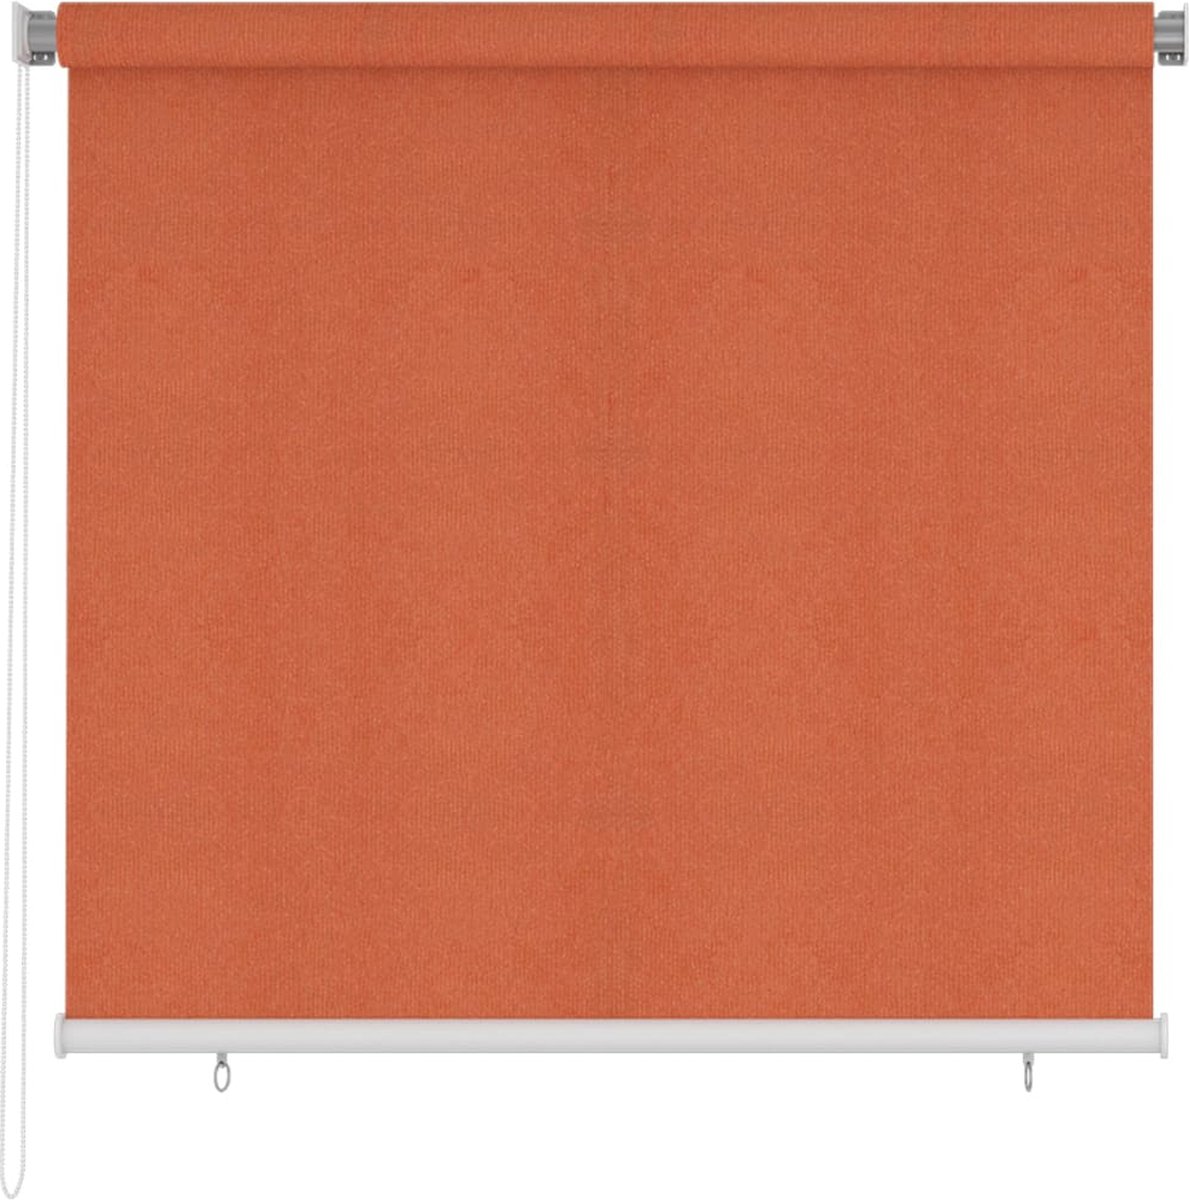 VidaLife Rolgordijn voor buiten 160x140 cm oranje